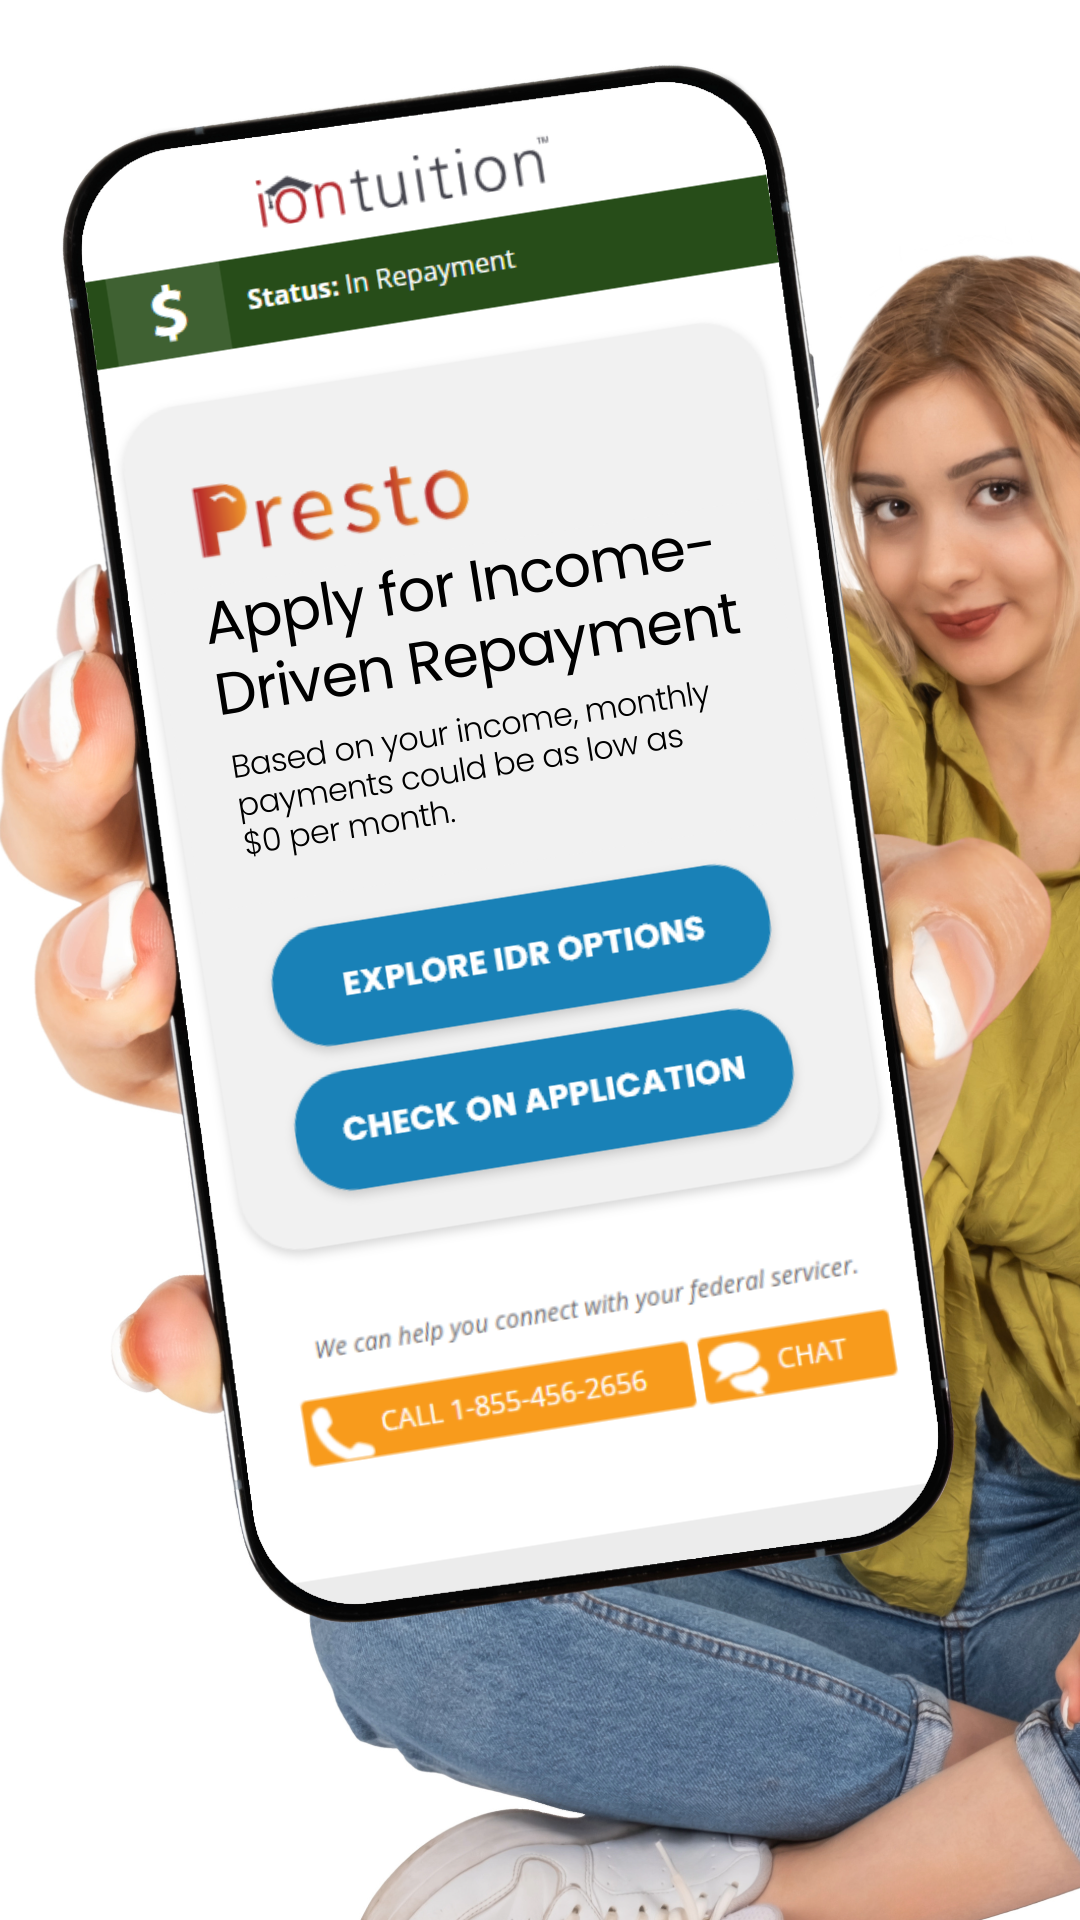 Income-Driven Repayment through Presto